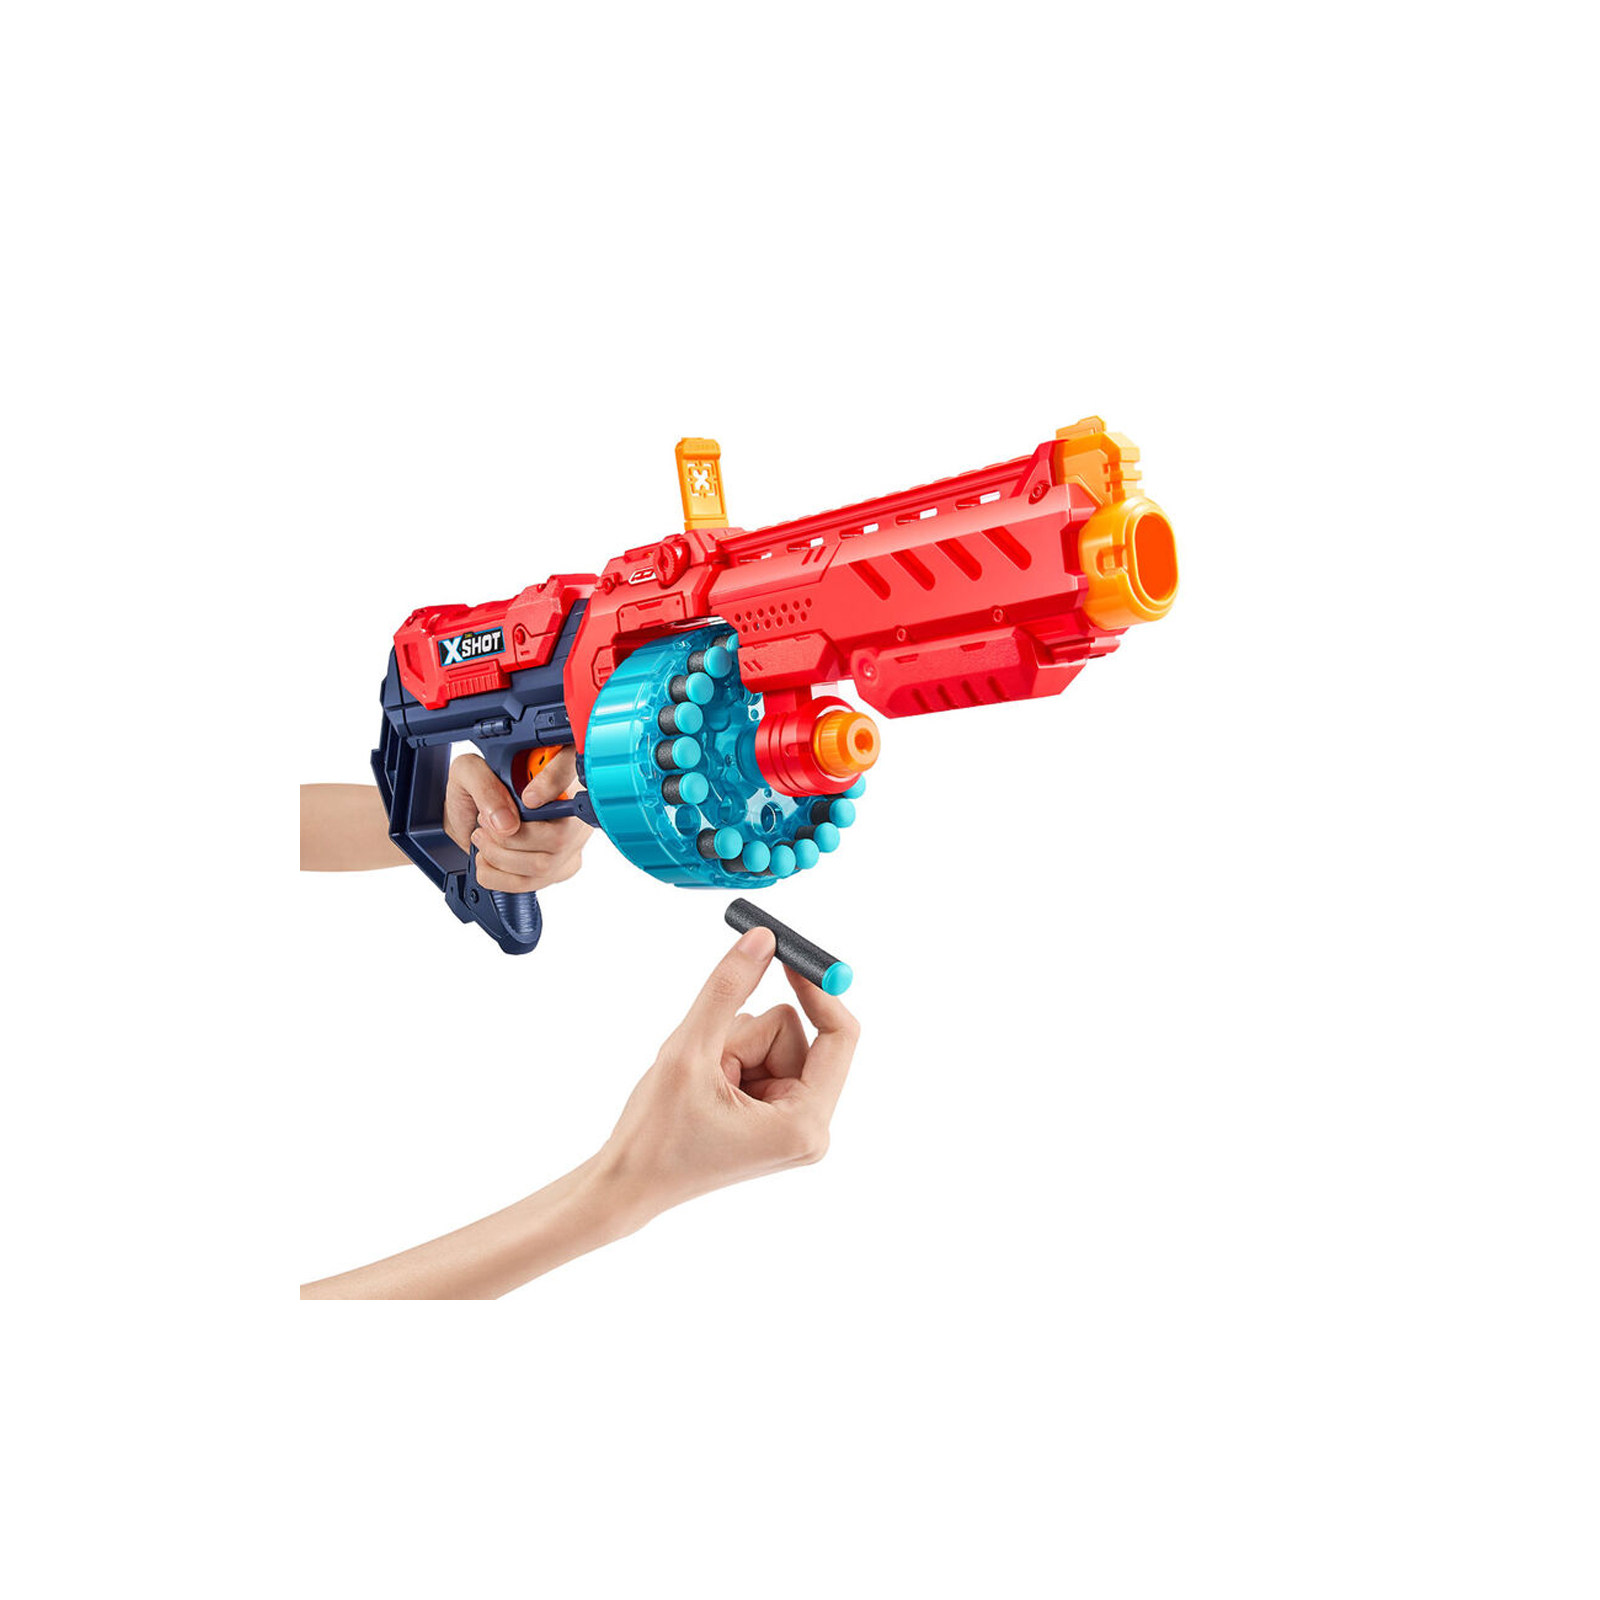 Іграшкова зброя Zuru X-Shot Red Швидкострільний бластер EXCEL Turbo Fire (48 патронів) (36270R) зображення 2